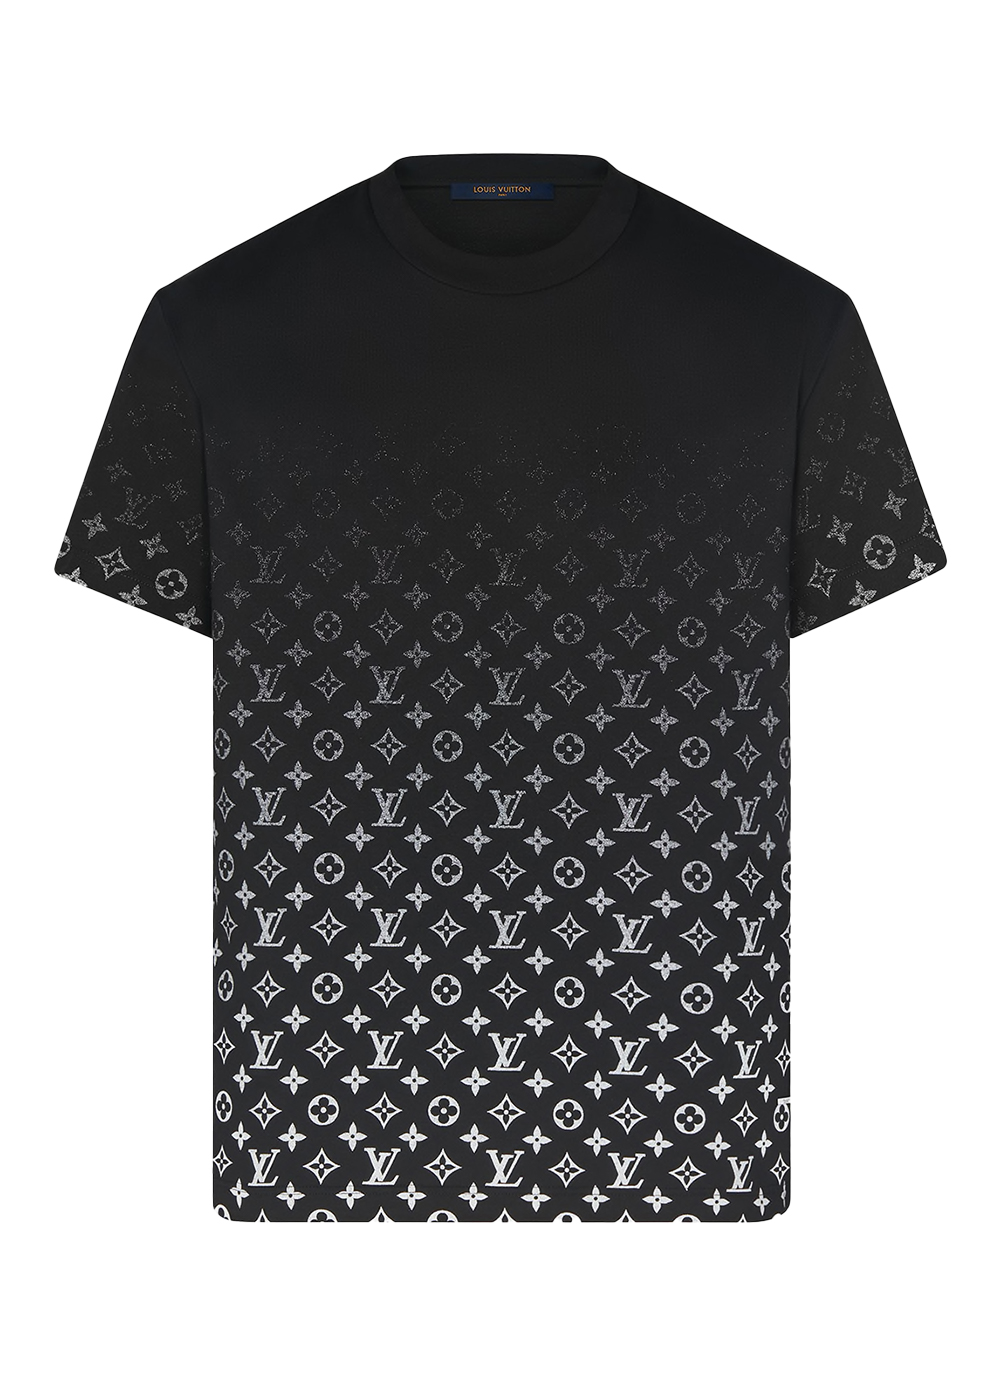 ルイ・ヴィトン LVSE モノグラム グラディエント Tシャツ ブラック/ホワイト